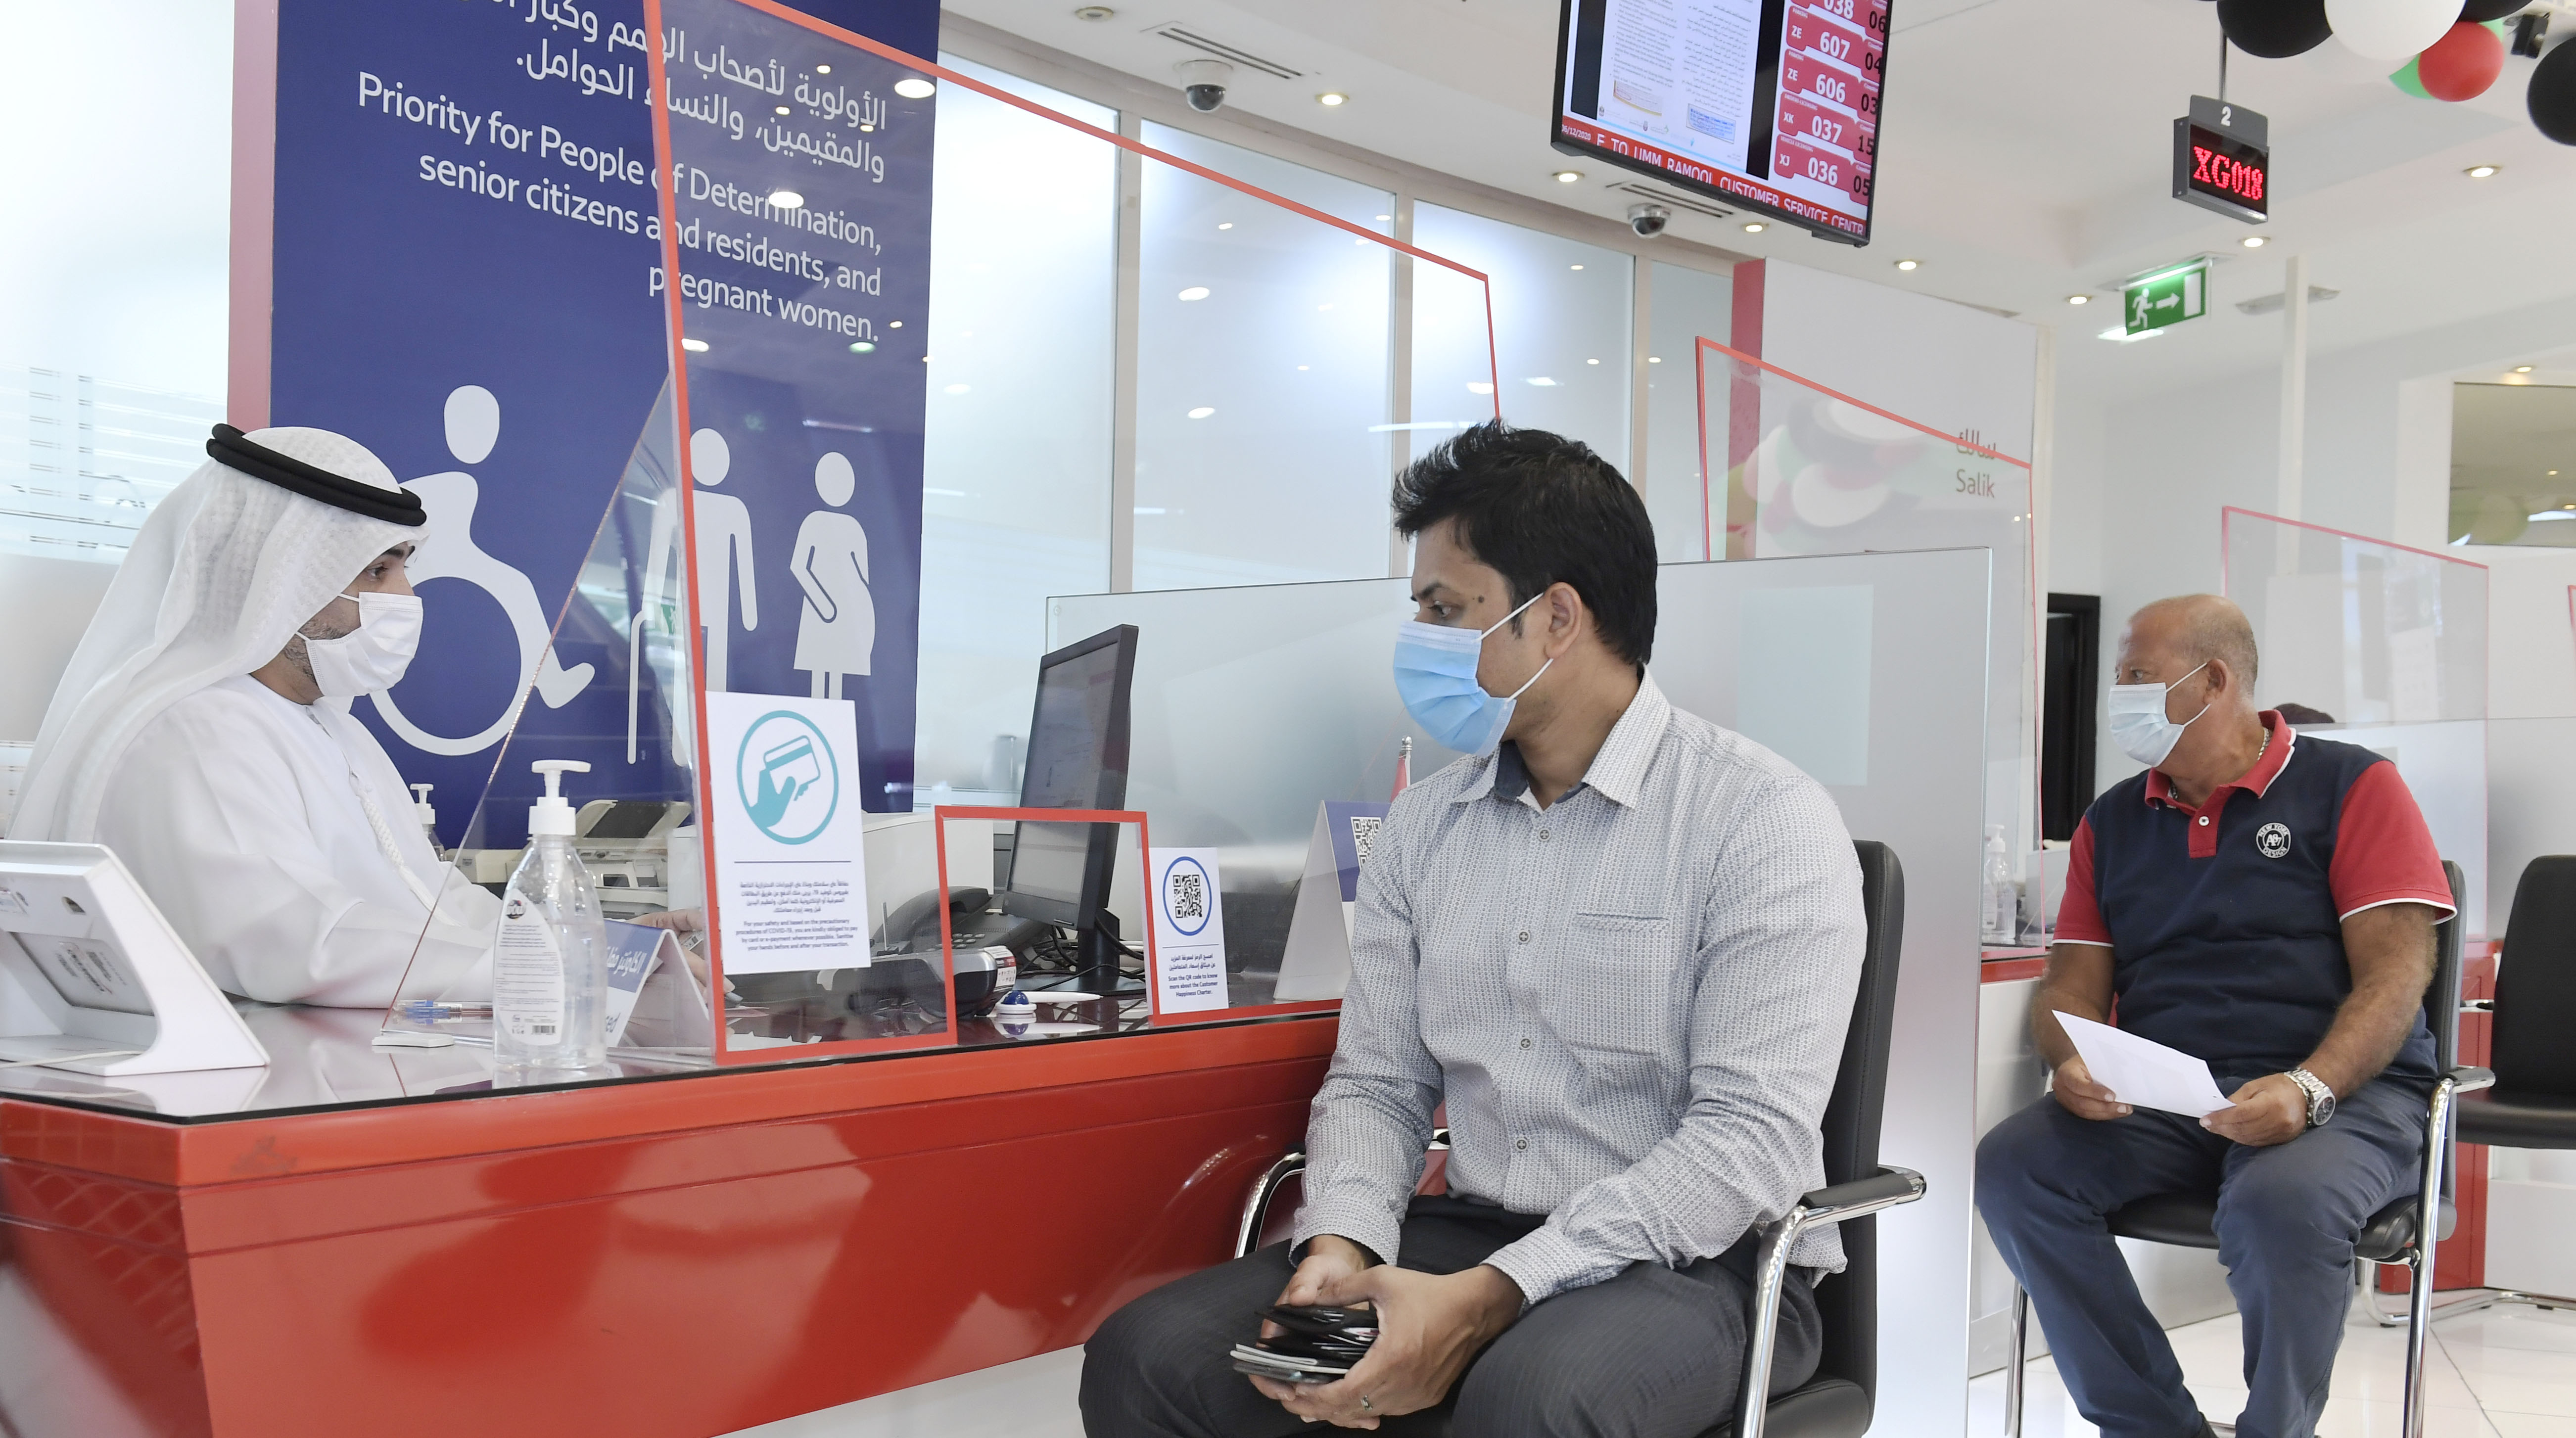 طرق دبي تُطوِّر تقنيات الذكاء الاصطناعي لرصد الالتزام بارتداء الكمامات لمتعاملي مراكز إسعاد المتعاملين